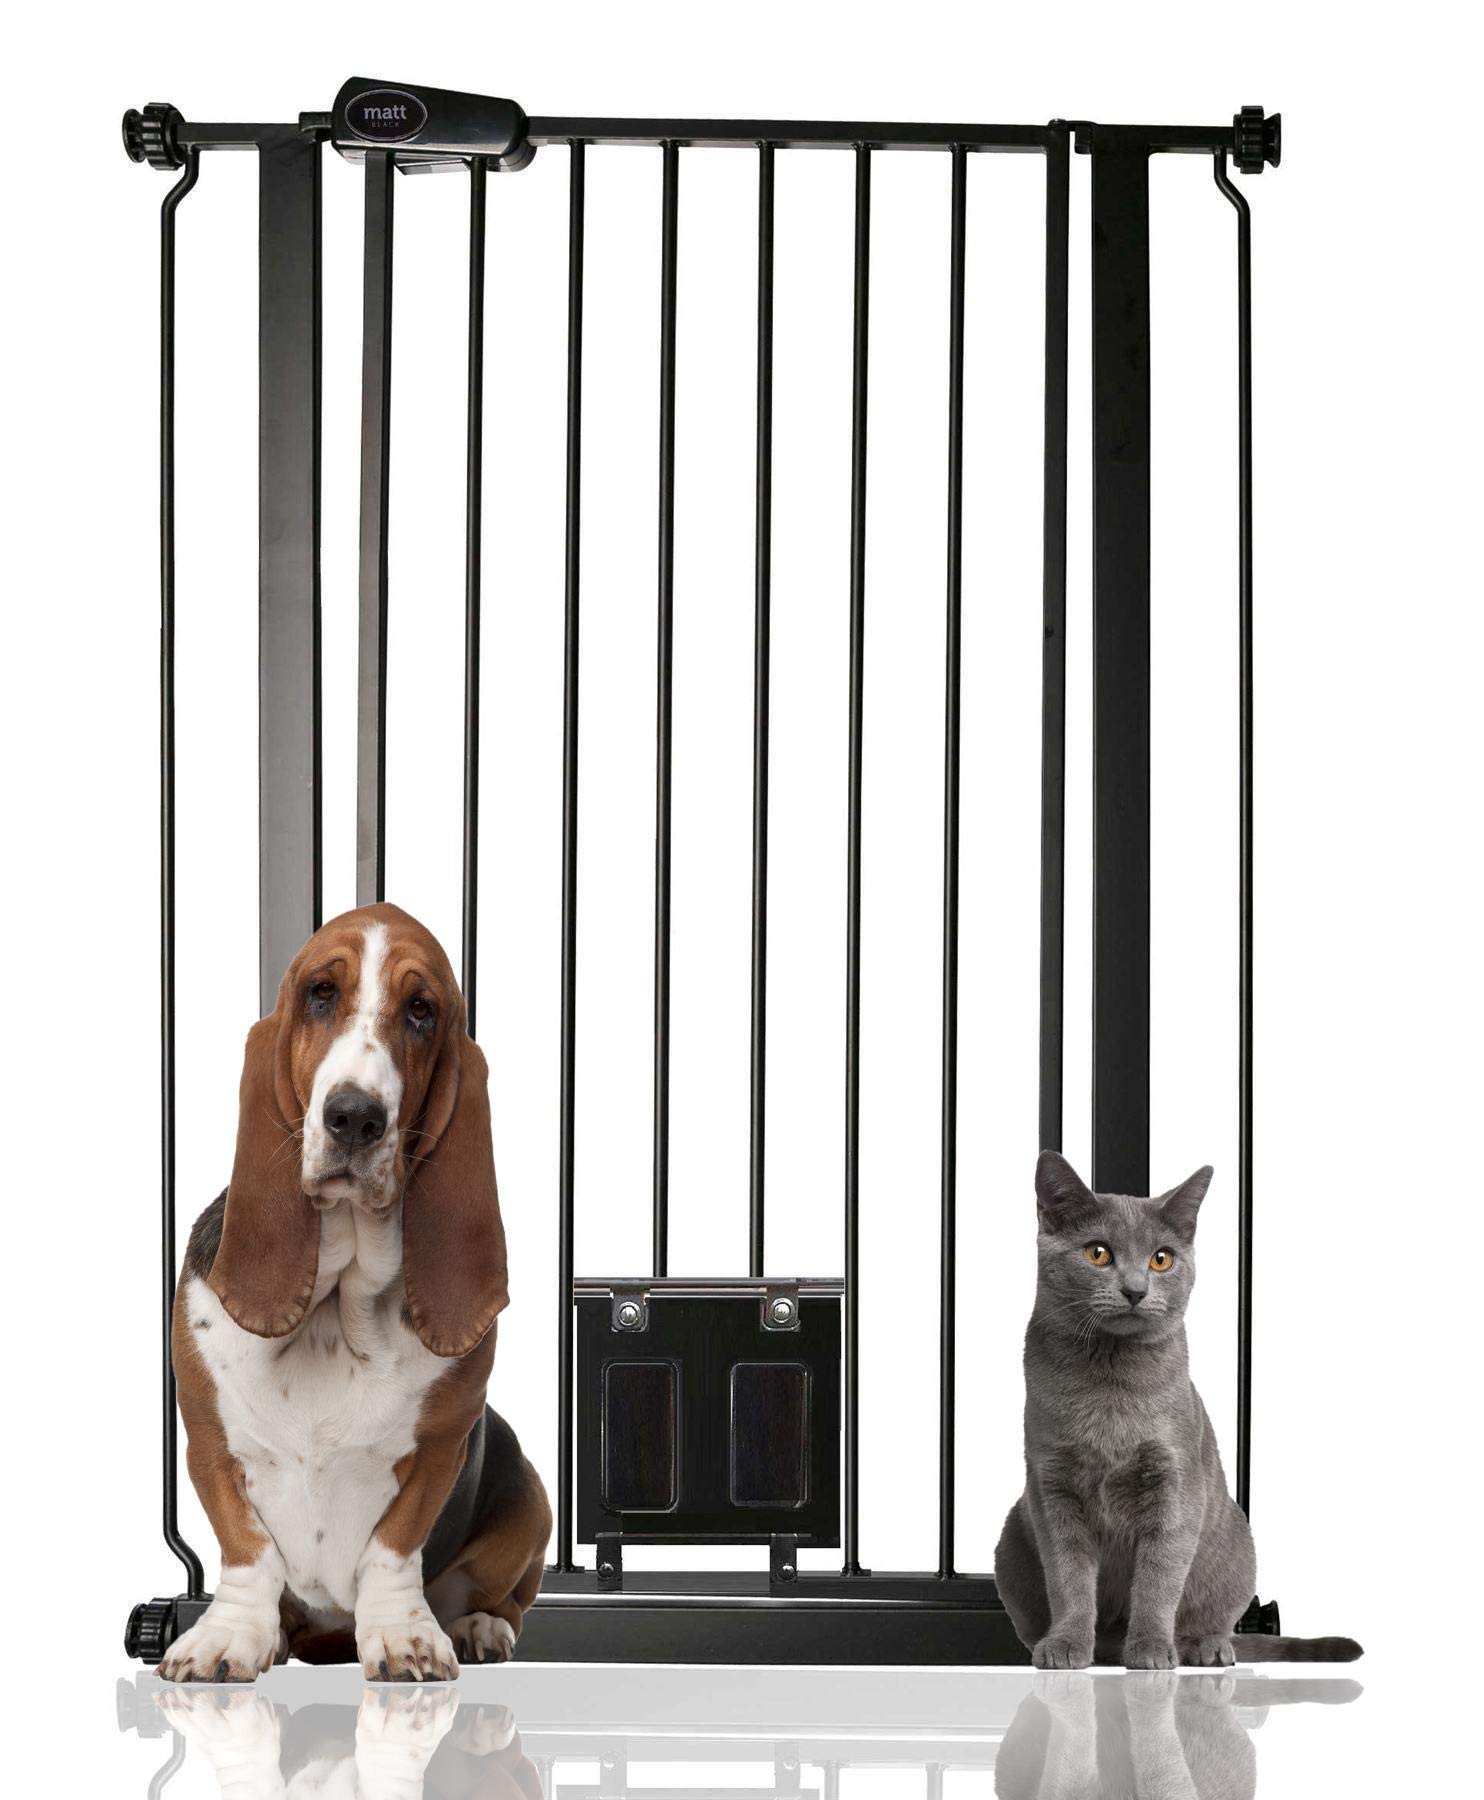 Bettacare Haustiergitter mit verriegelbarer Katzenklappe, 75cm - 84cm, Schwarz, 104cm in der Höhe, Extra hohes Hundesicherheitsgitter mit Katzenklappe, Einfache Installation